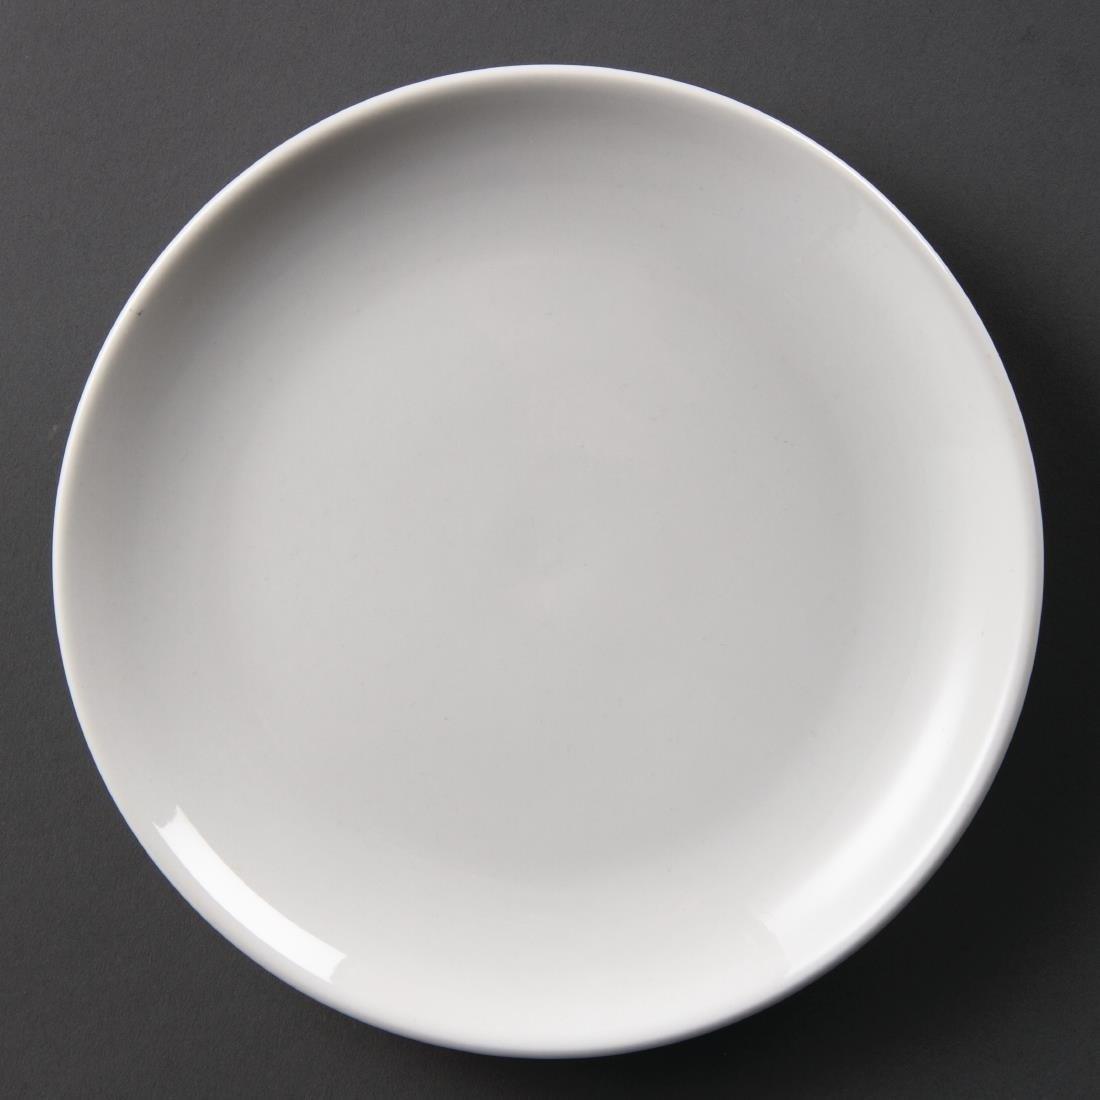 Lot de 12 assiettes plates en porcelaine véritable - 200 mm